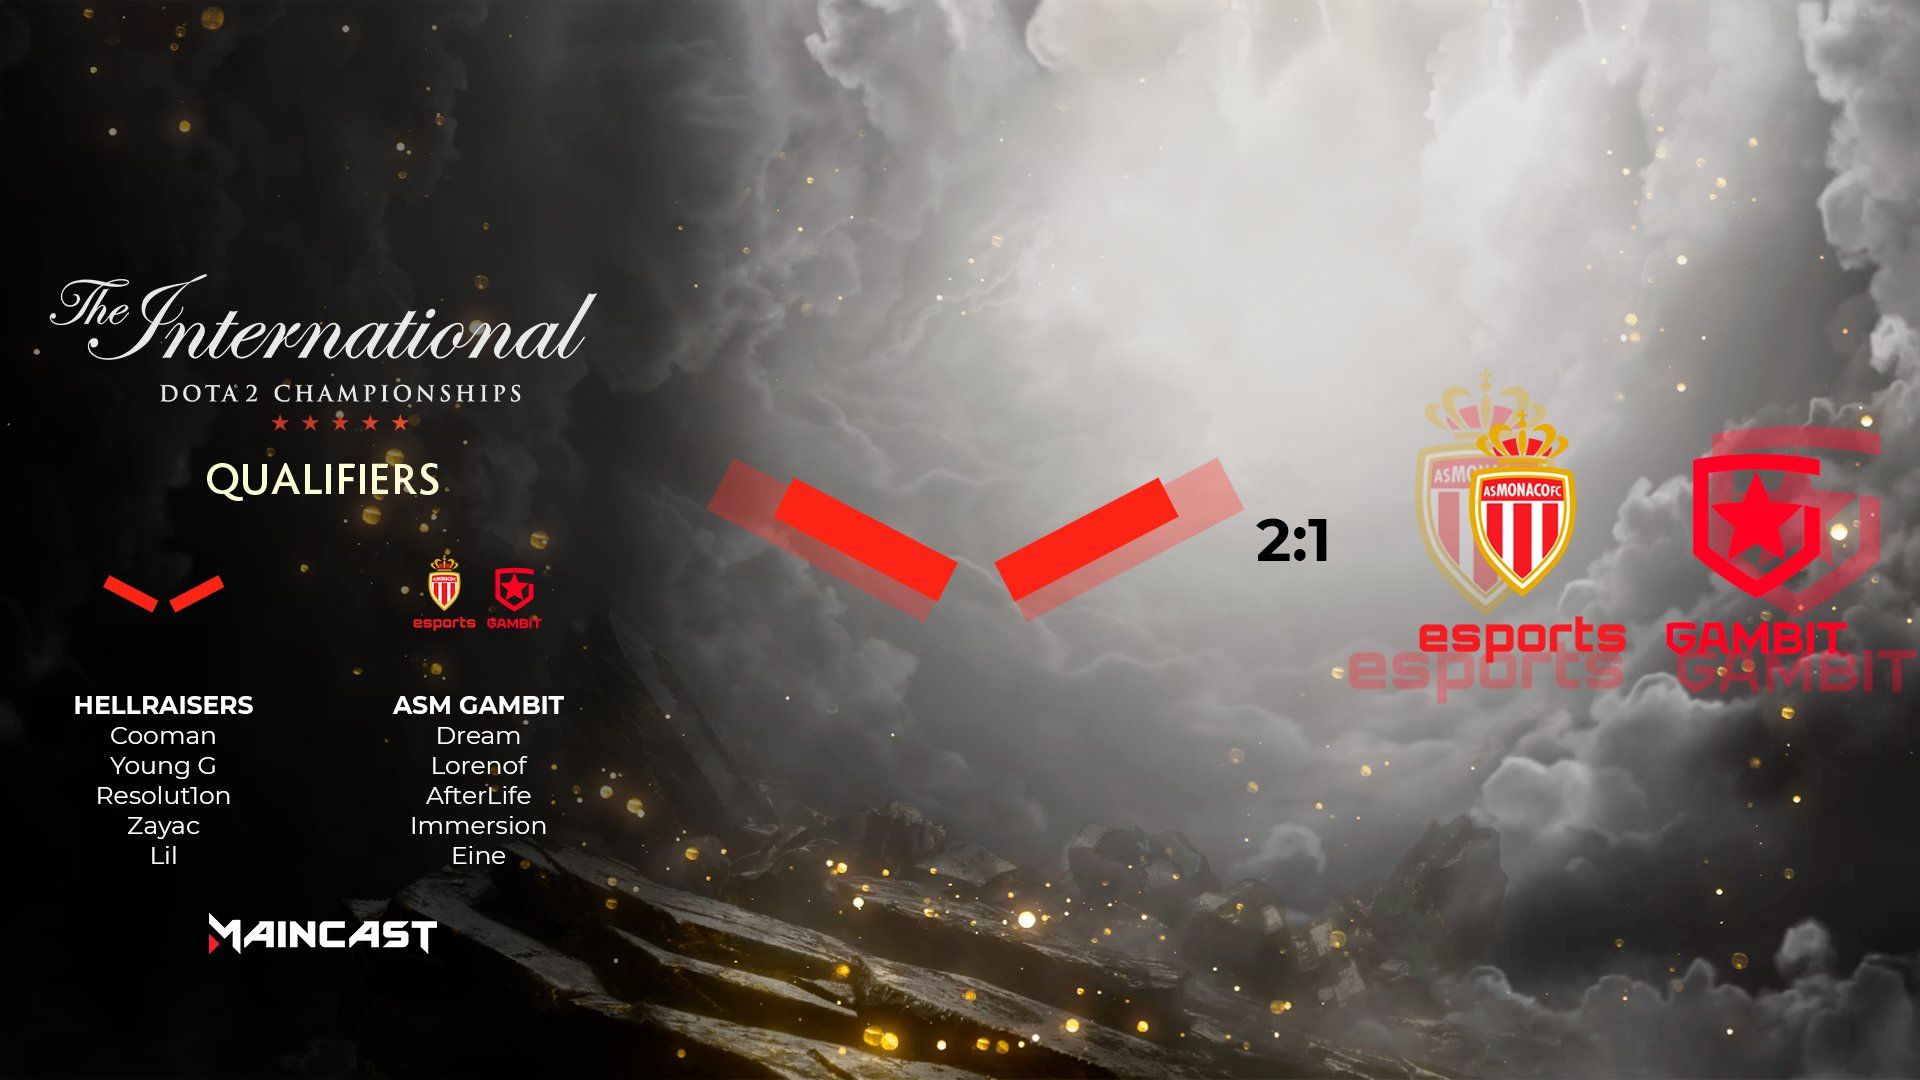 AS Monaco Gambit — HellRaisers: карта за 19 минут и первый Rampage в этой квалификации